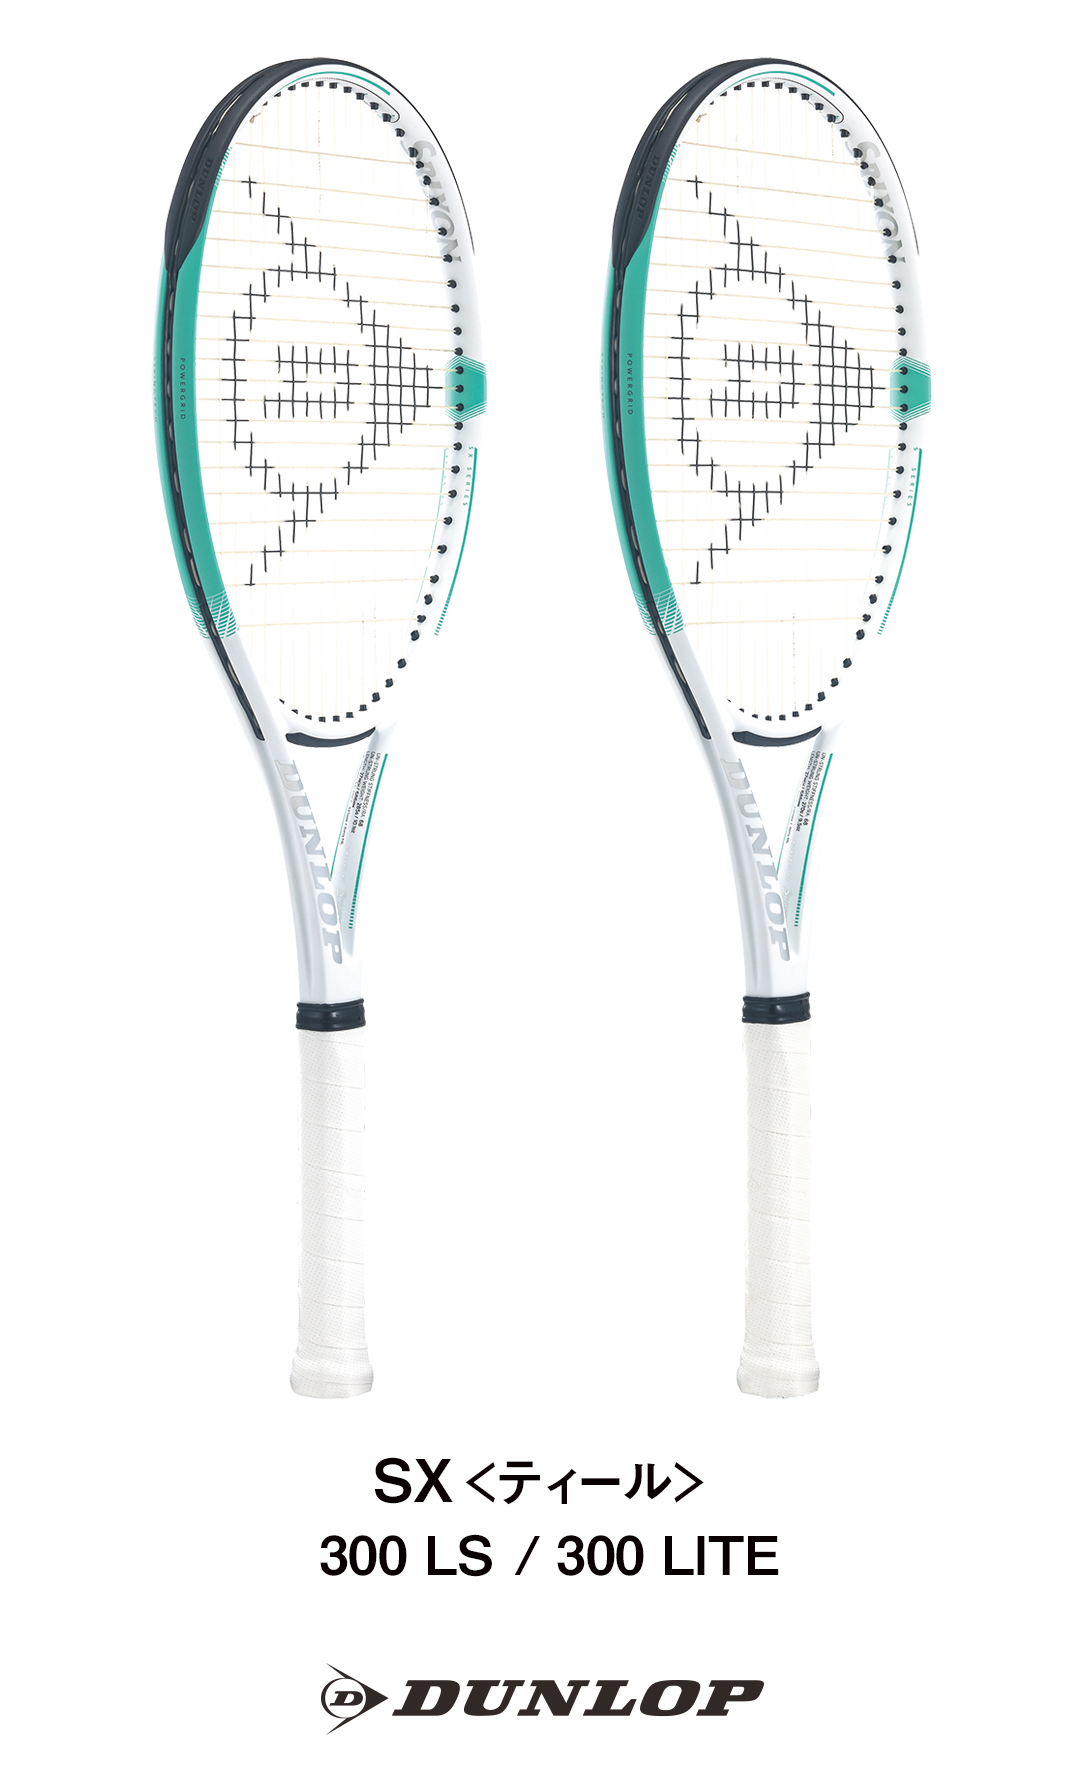 ダンロップテニスラケット「SX」シリーズに新色「ティール」が登場